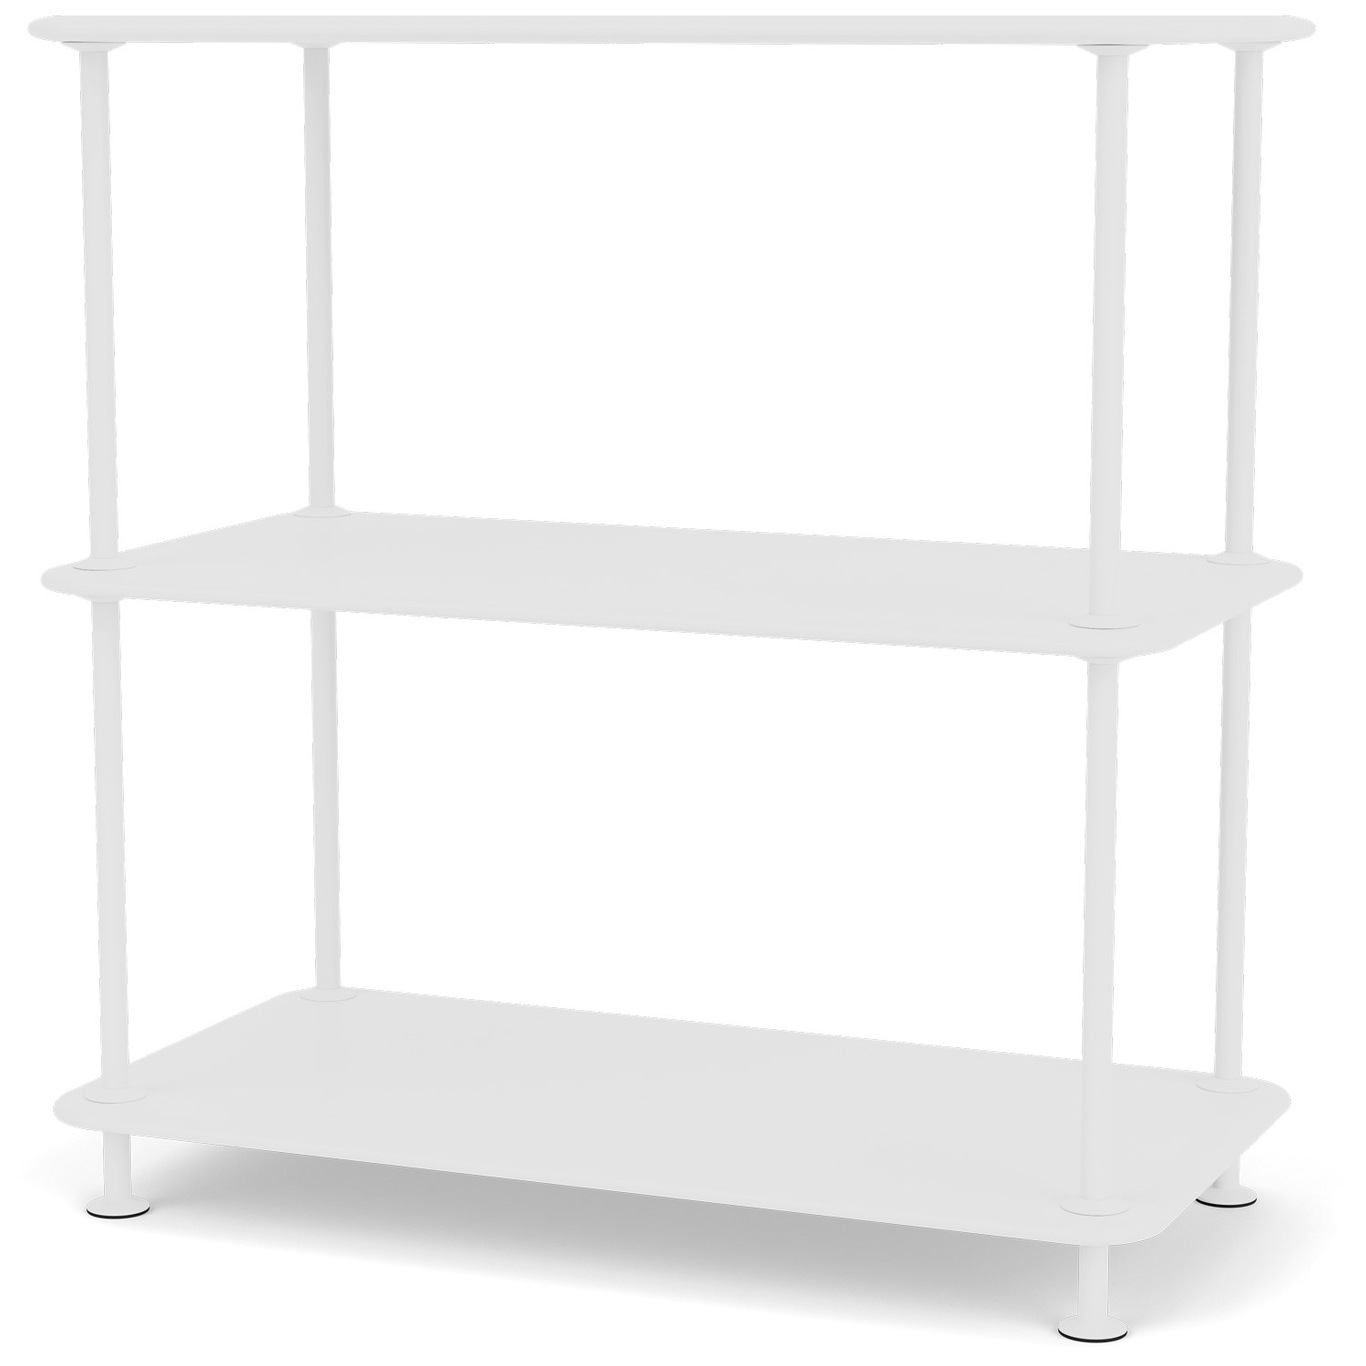 Free Shelf 200000, New White